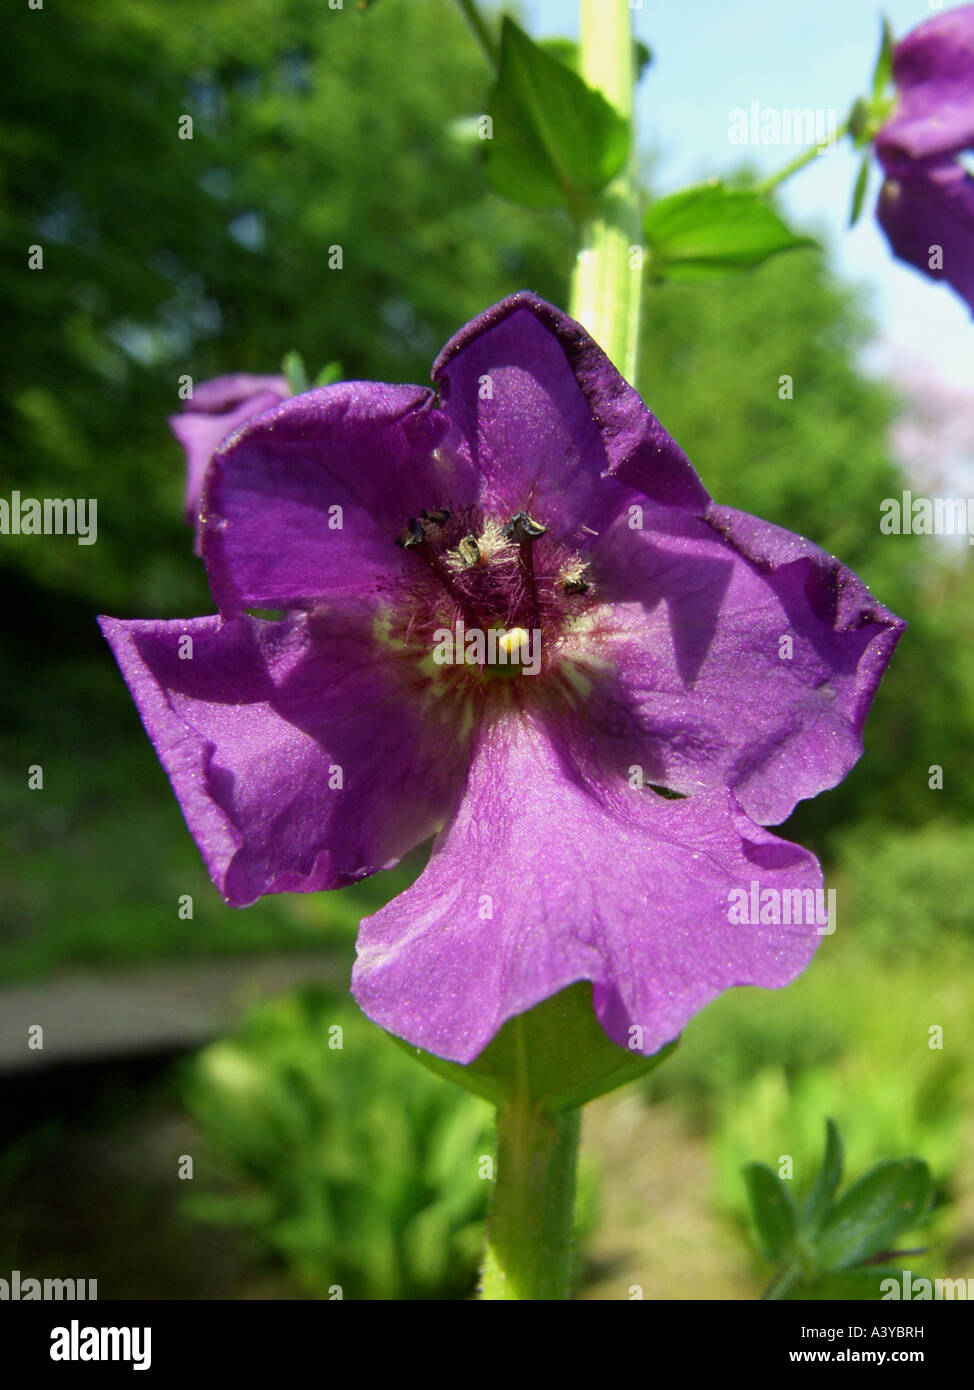 purple mullein, ornamental mullein (Verbascum phoeniceum), flower Stock Photo